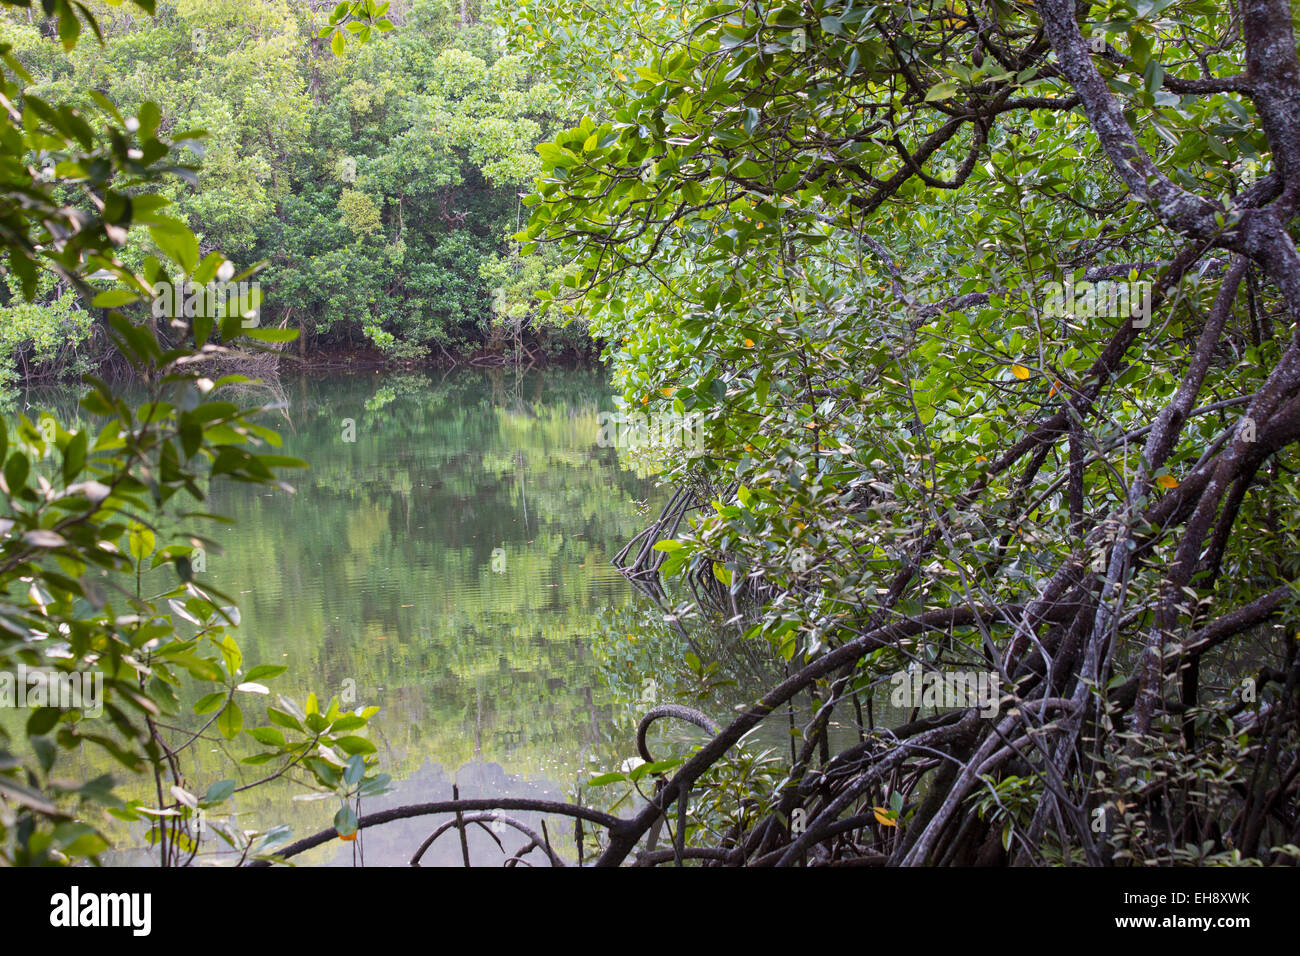 Forêt de mangroves le long d'une rivière, de la région de Daintree, Queensland, Australie Banque D'Images